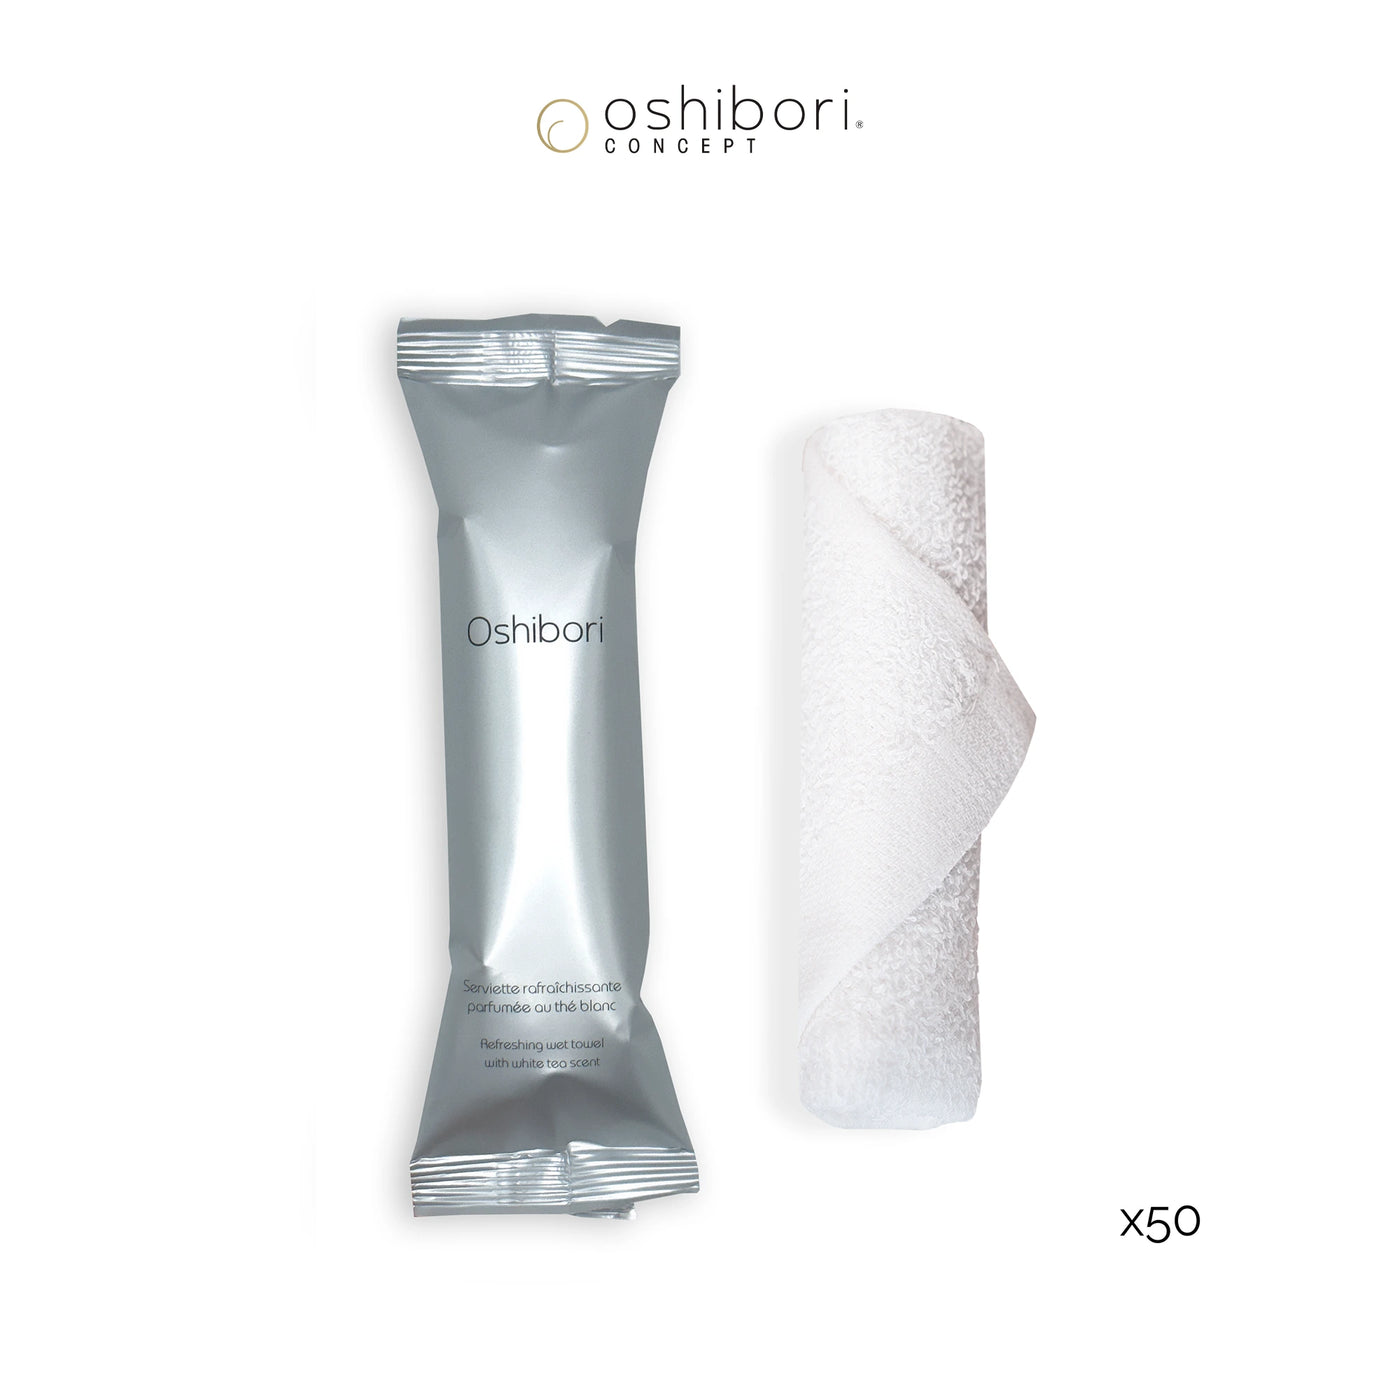 Oshibori rinfrescante - 15 grammi - Argento (x50)